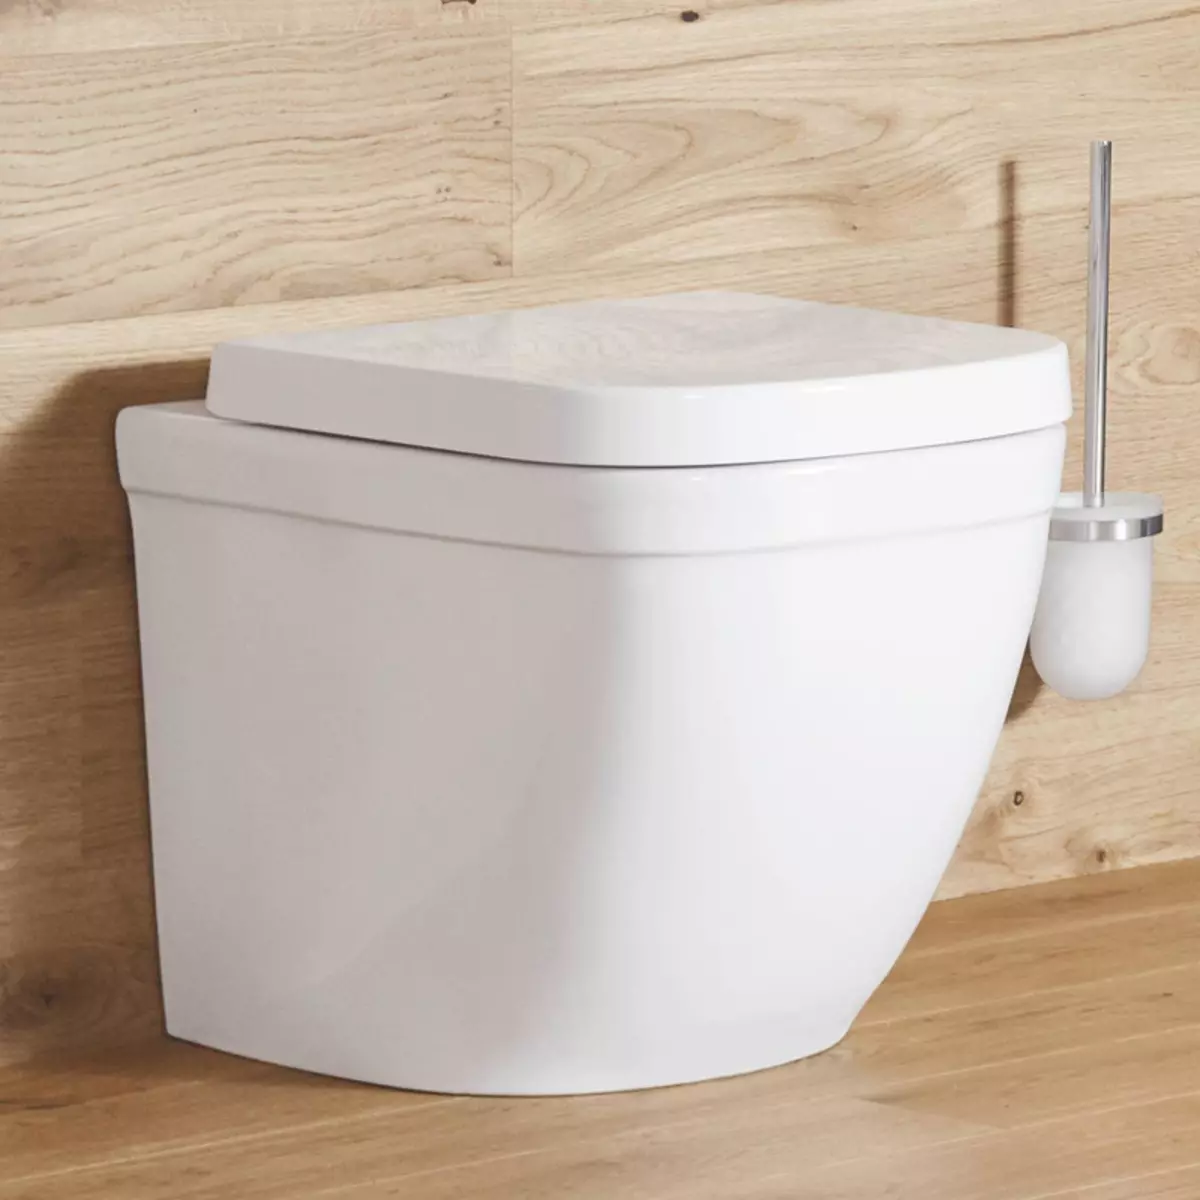 وعاء المرحاض مع الإفراج المائل: محامل المستوردة Unitaz-Compact، ركن الطبعة، المرحاض المدمجة الكابل وغيرها من النماذج مع الإصدار المائل 10523_11